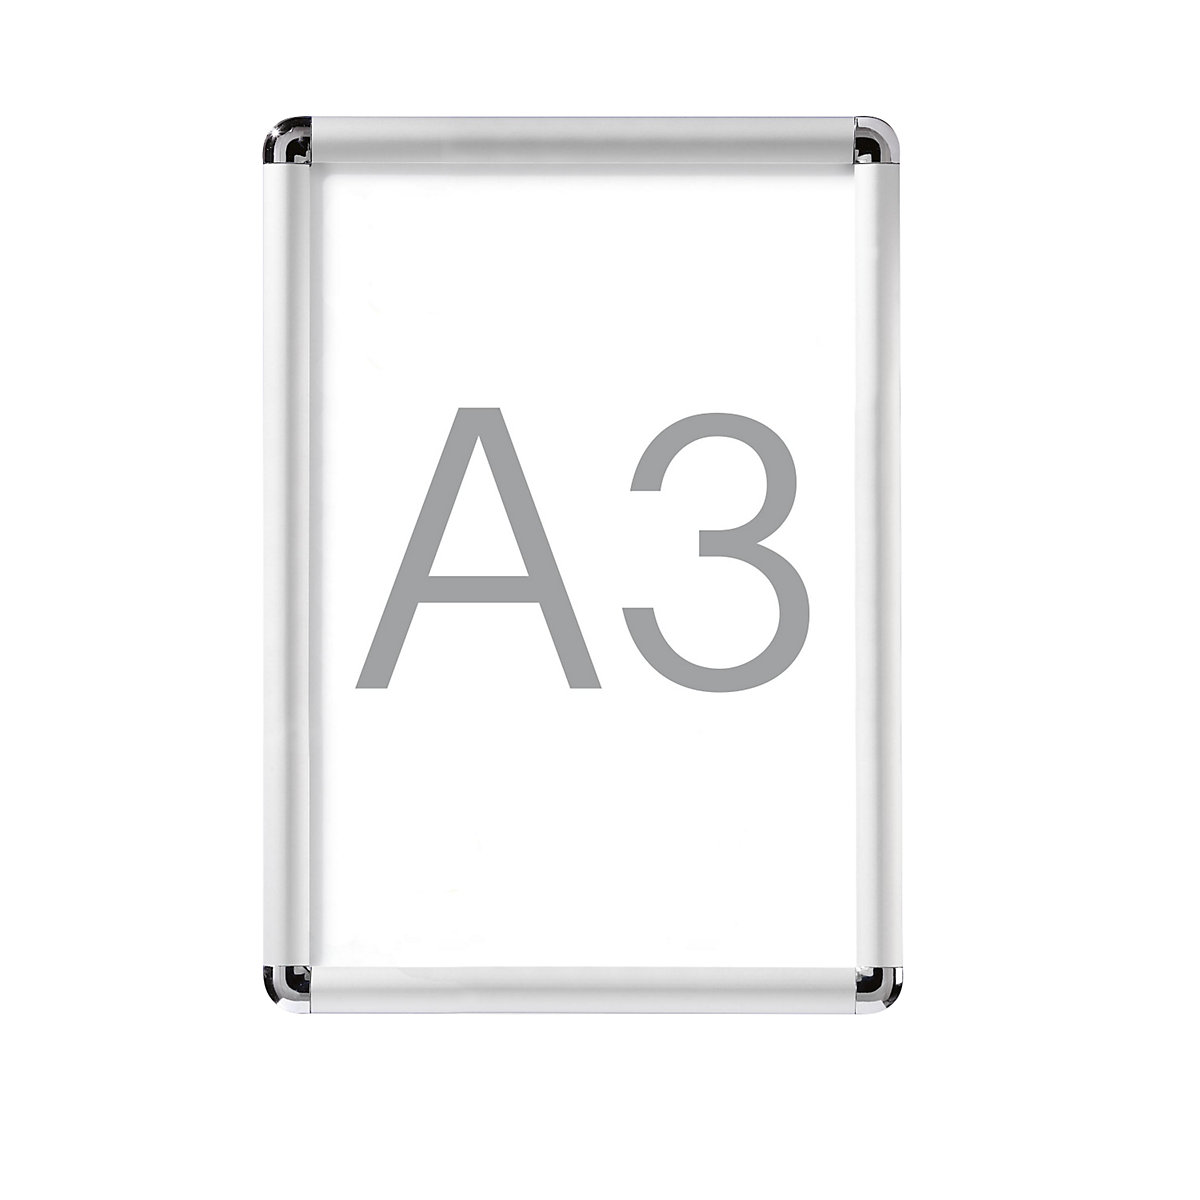 Display-klapframe, aluminium, VE = 2 stuks, voor A3-7